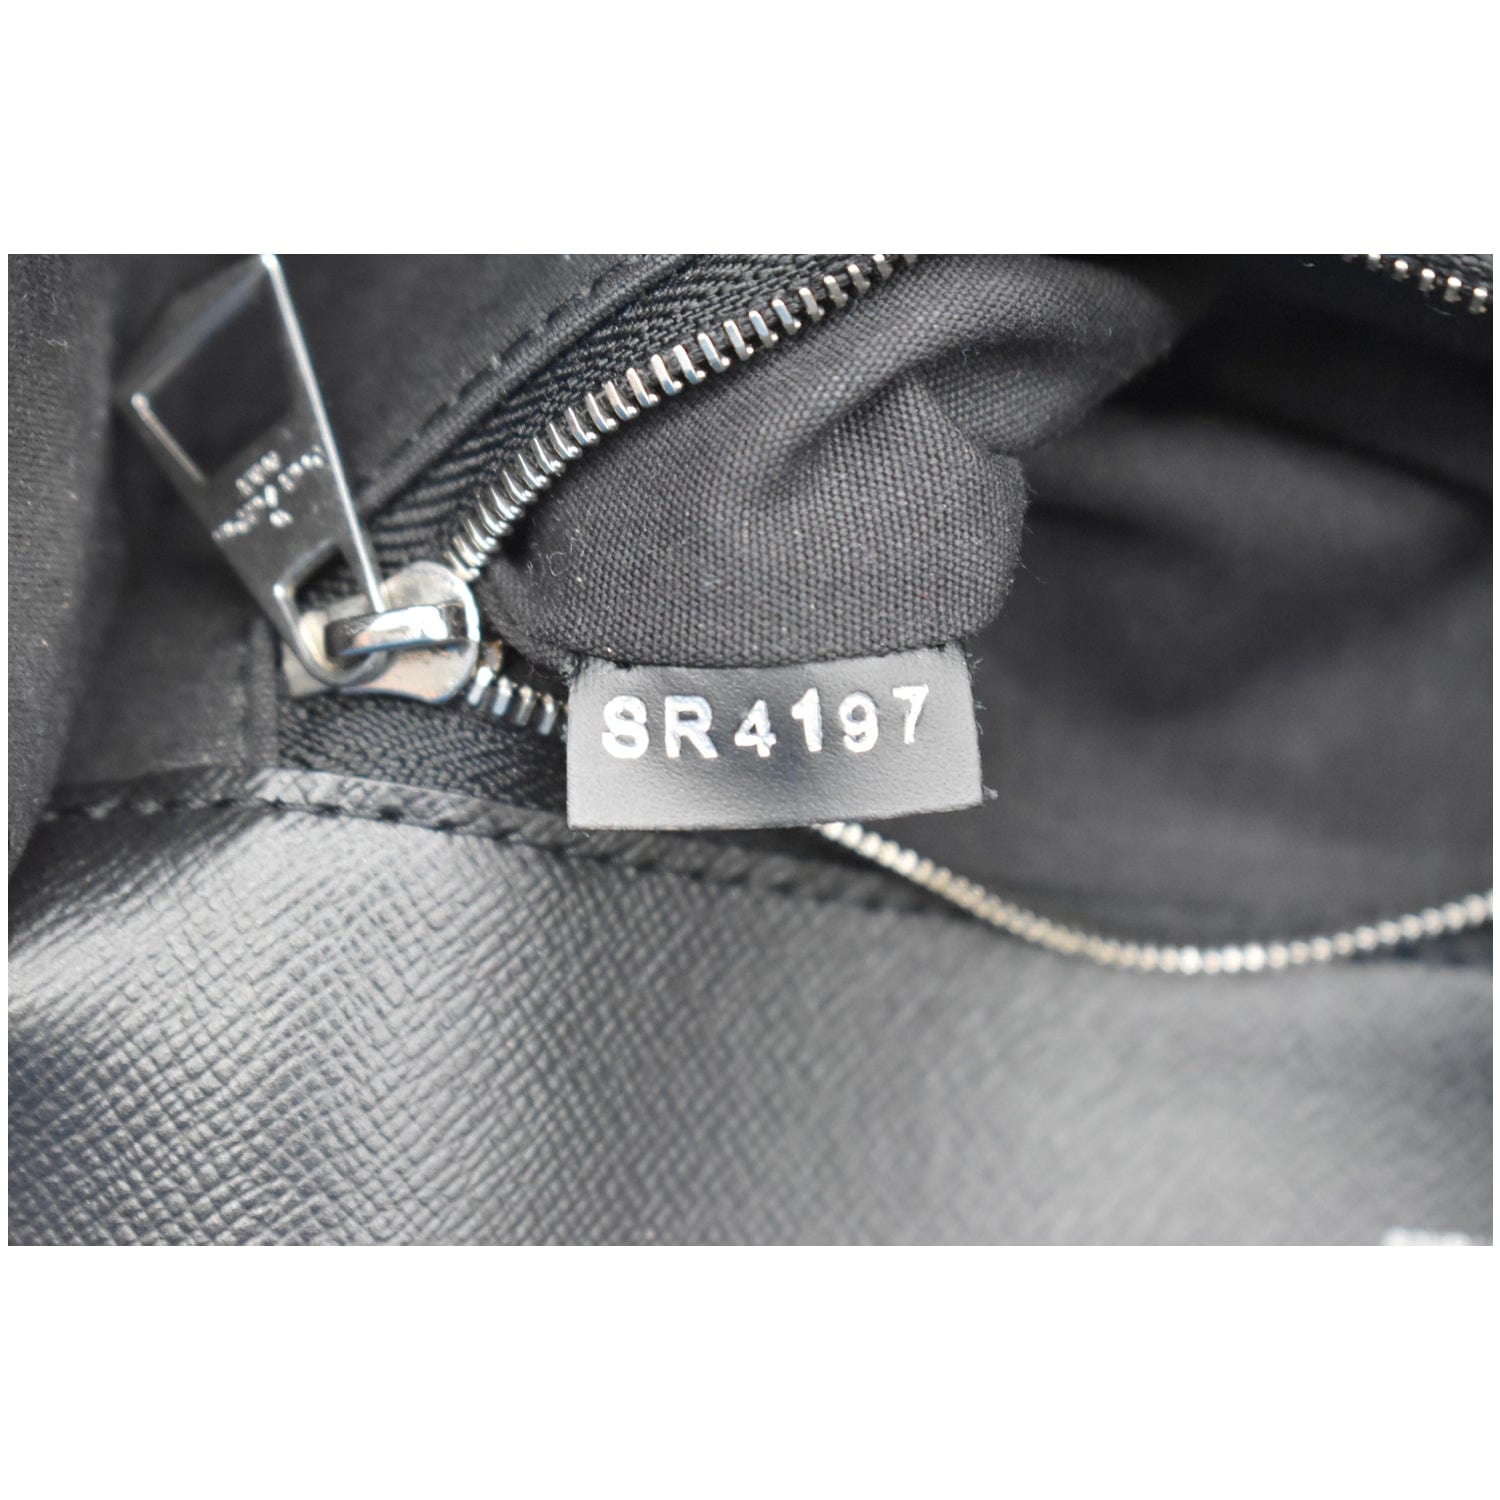 LOUIS VUITTON Clery Pochette Epi Leather Shoulder Bag Black